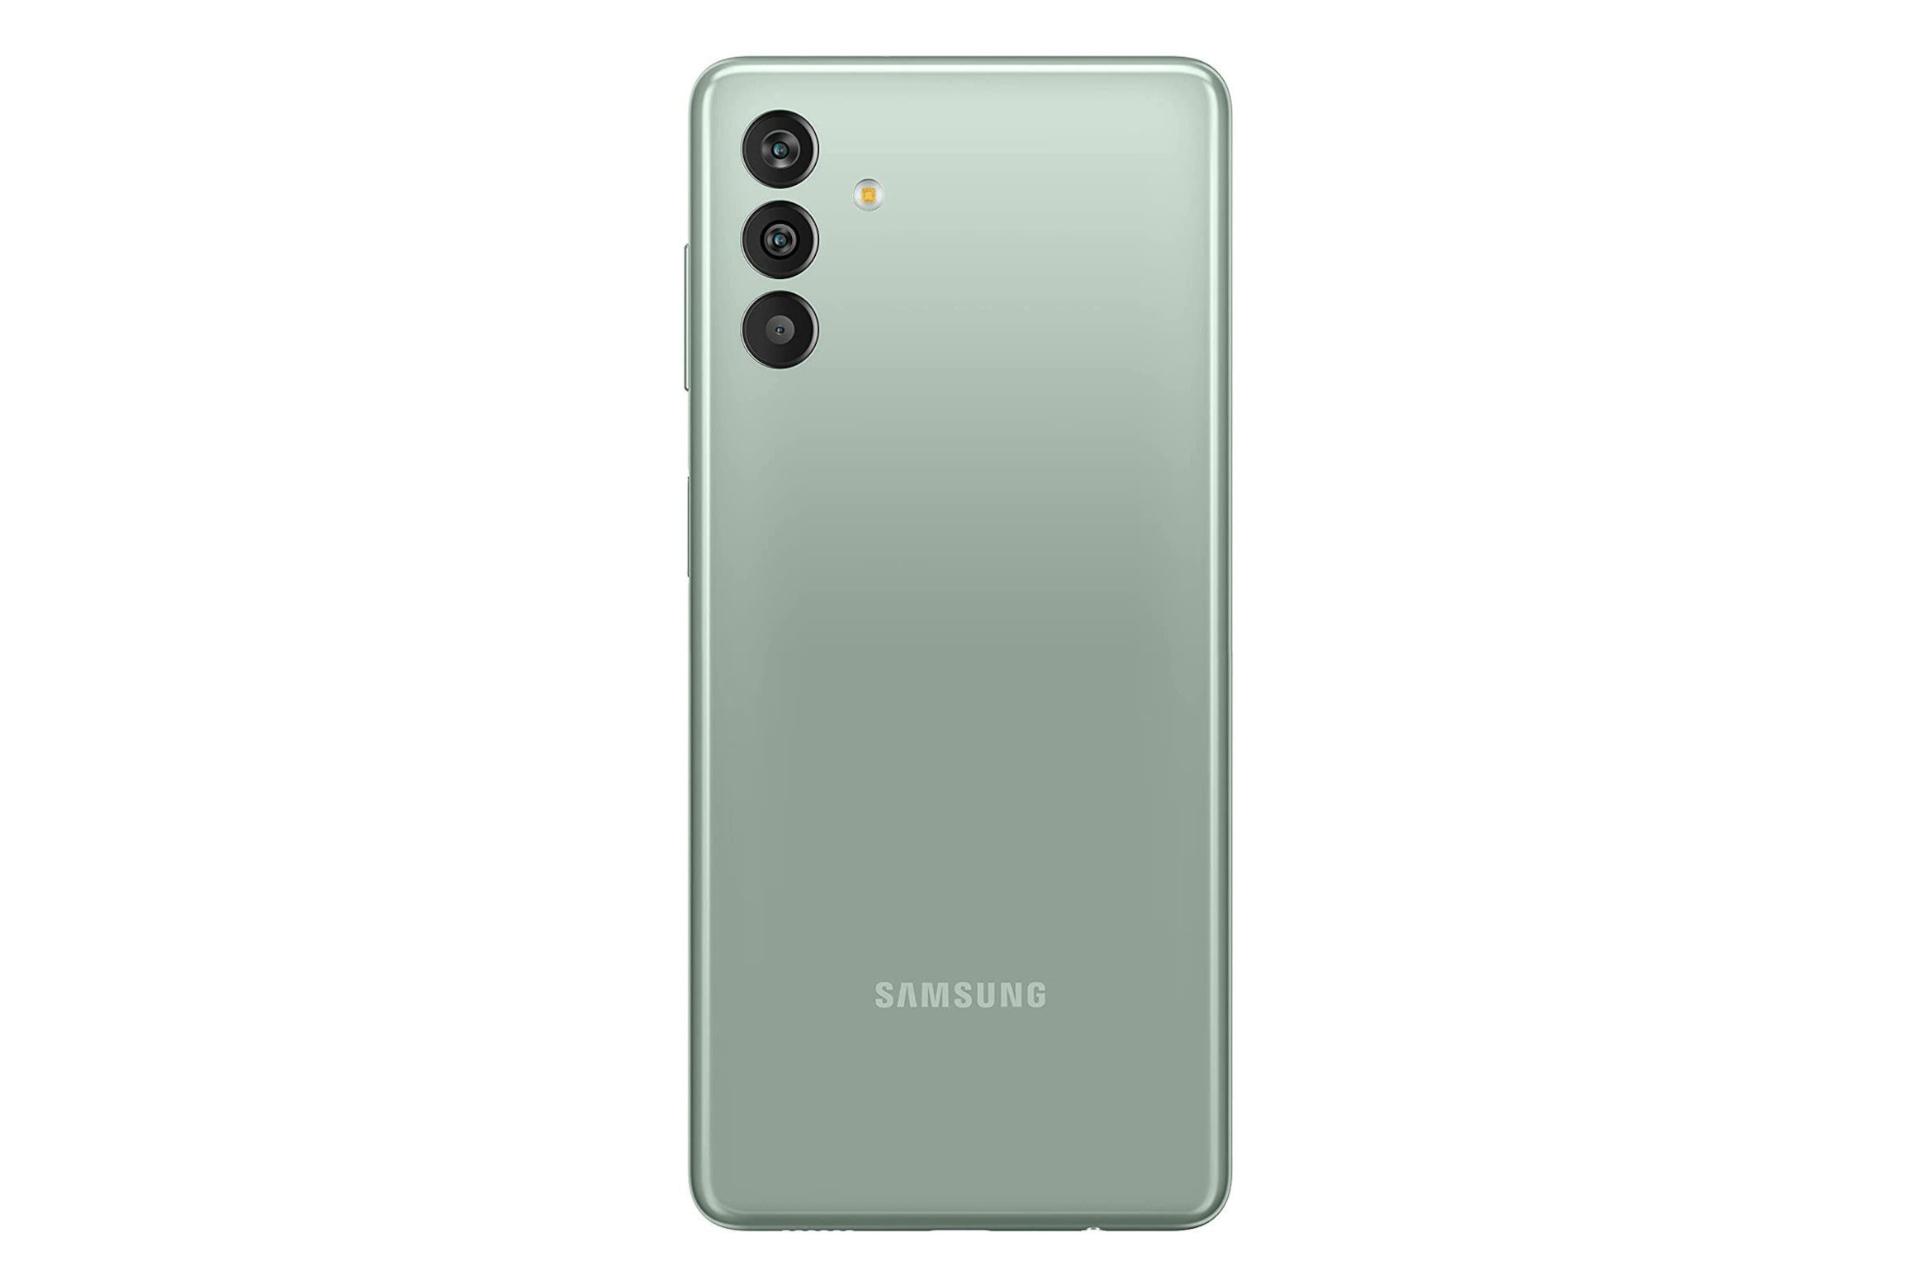 پنل پشت گوشی  موبایل گلکسی M13 سامسونگ نسخه هند / Samsung Galaxy M13 India سبز